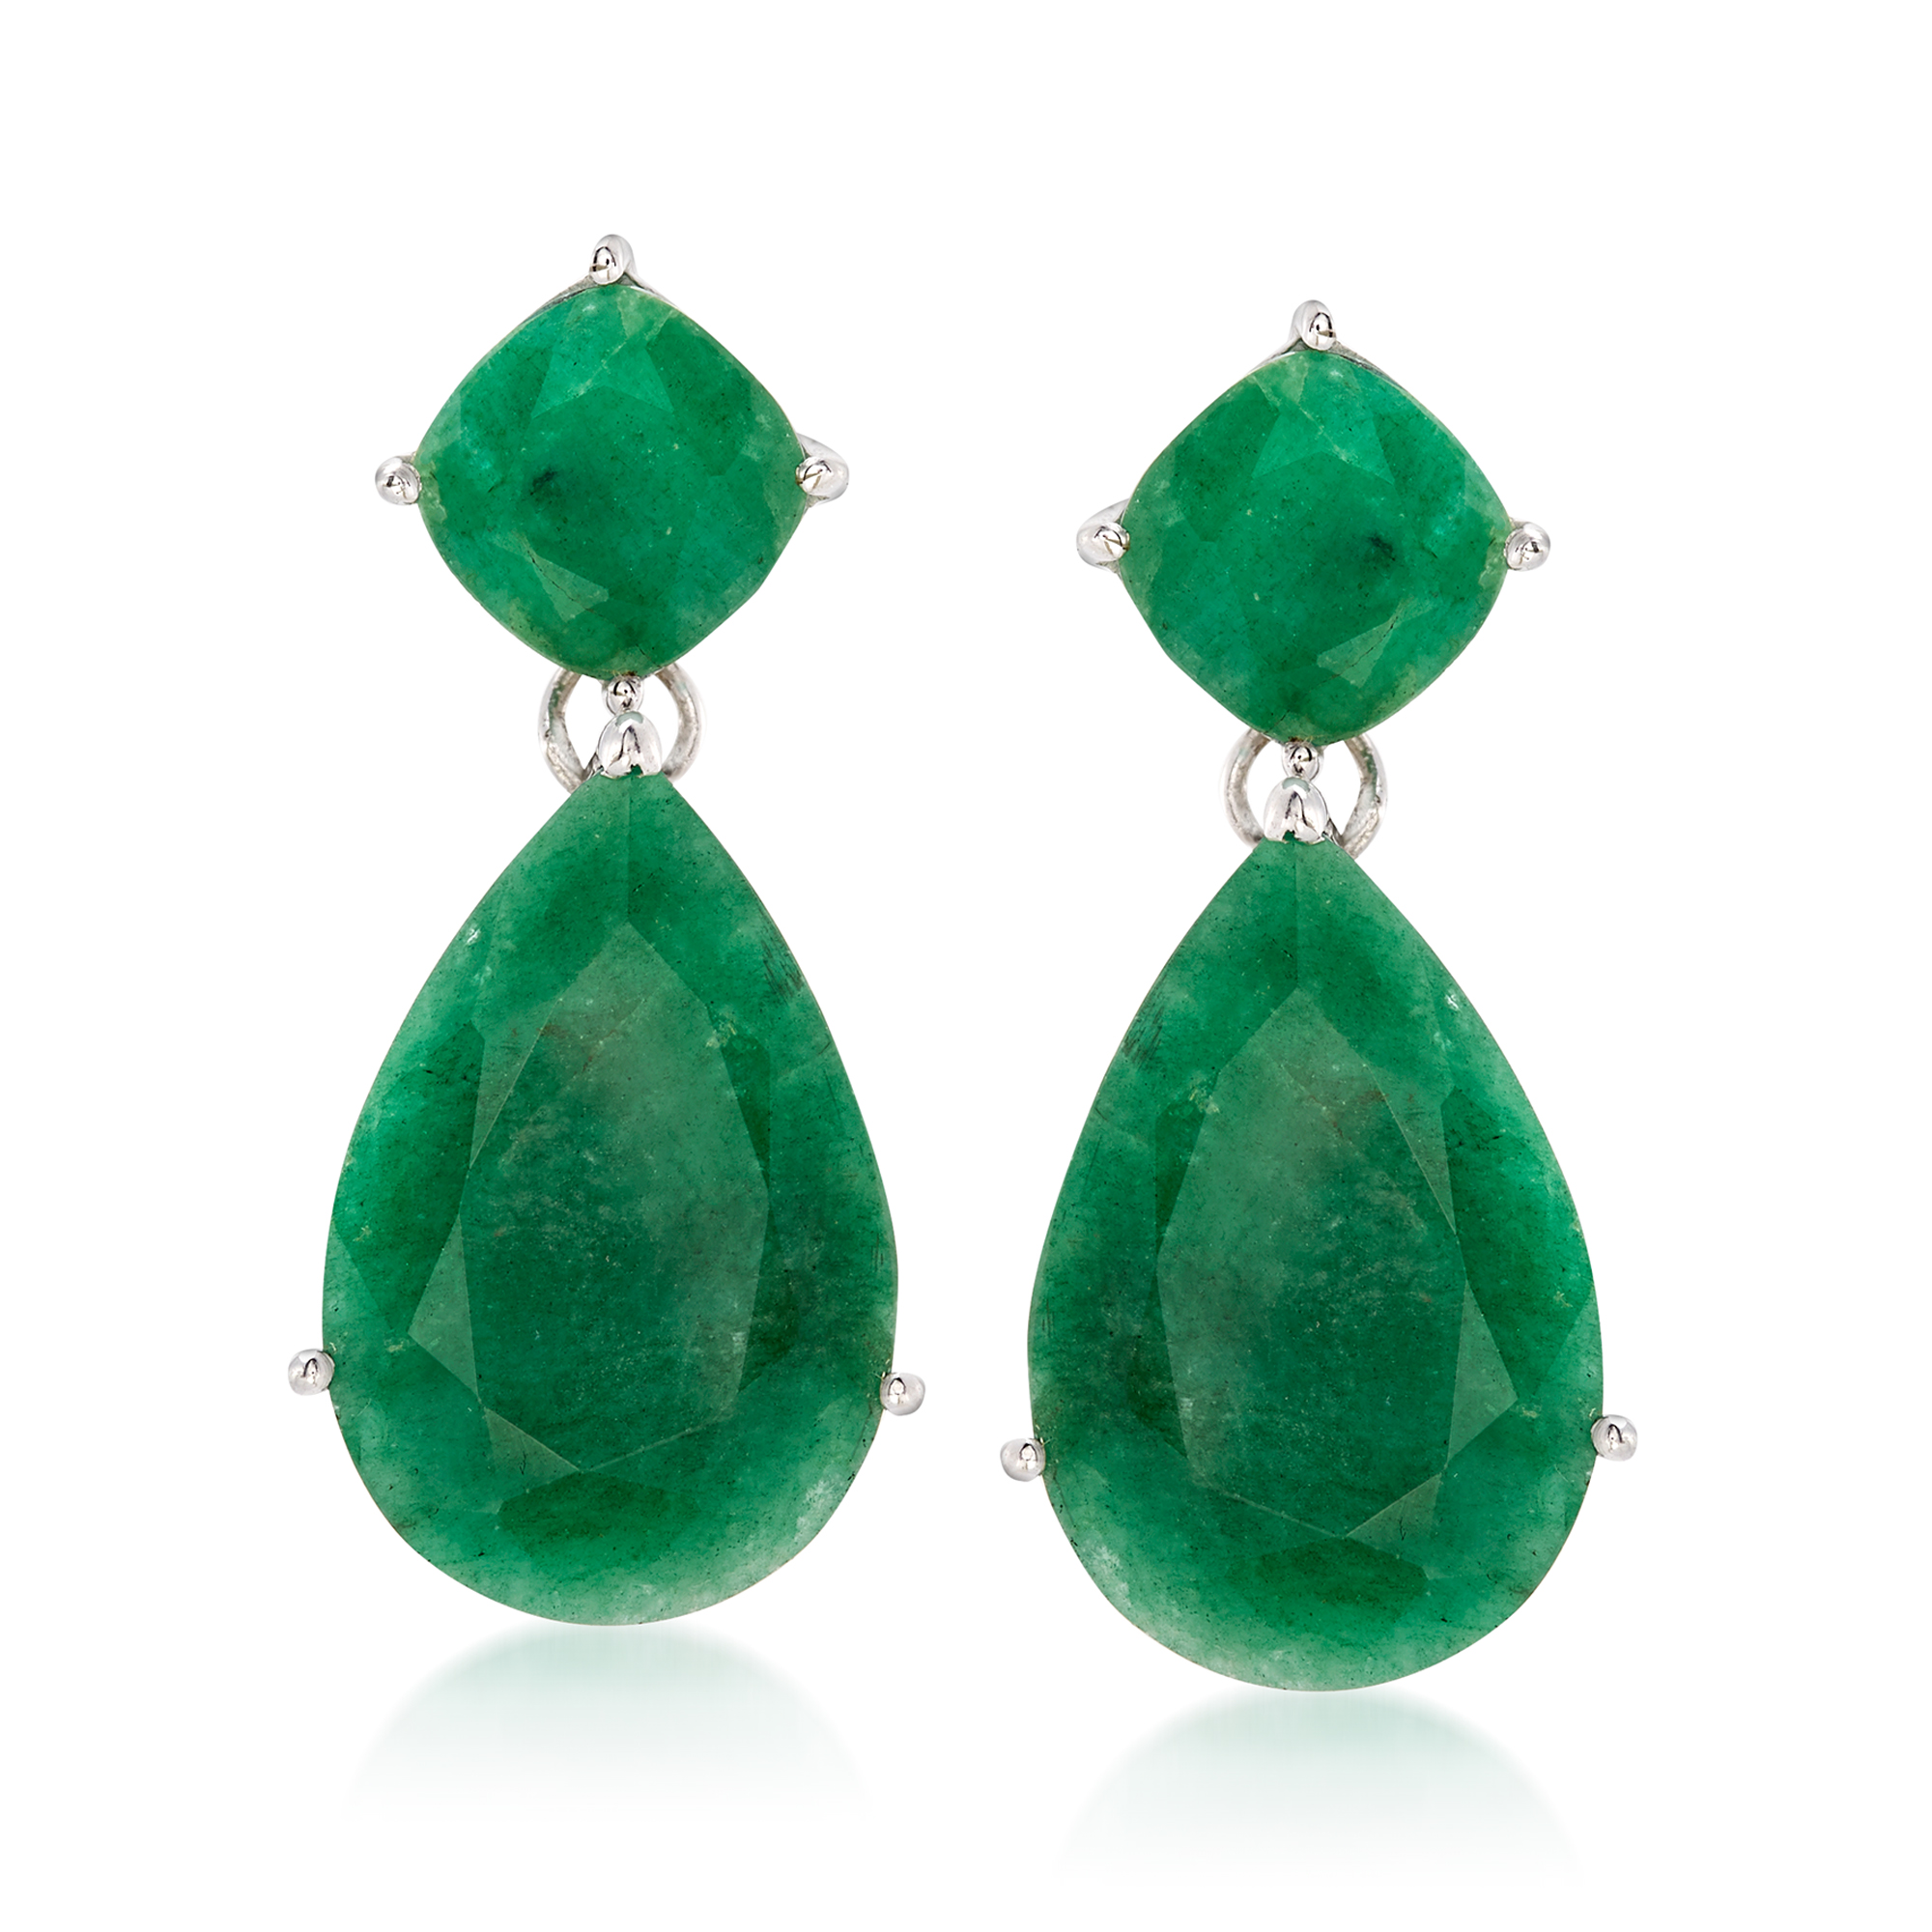 Emerald silver earrings Dangle silver earrings Green earrings Stone silver Emerald drop earrings Emerald earrings May birthstone gift